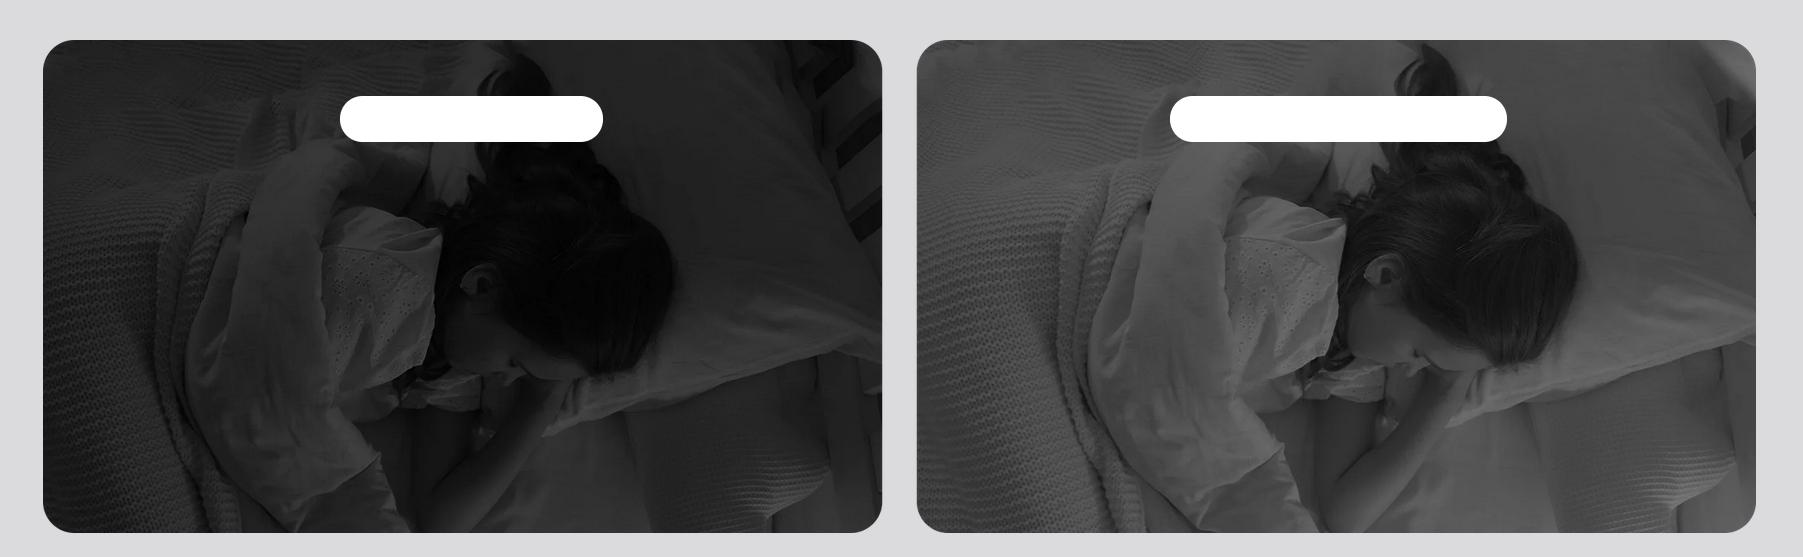 Kamera IP Xiaomi Mi Smart Camera C400 - idealny widok na wszystko także w nocy i brak czerwonej poświaty